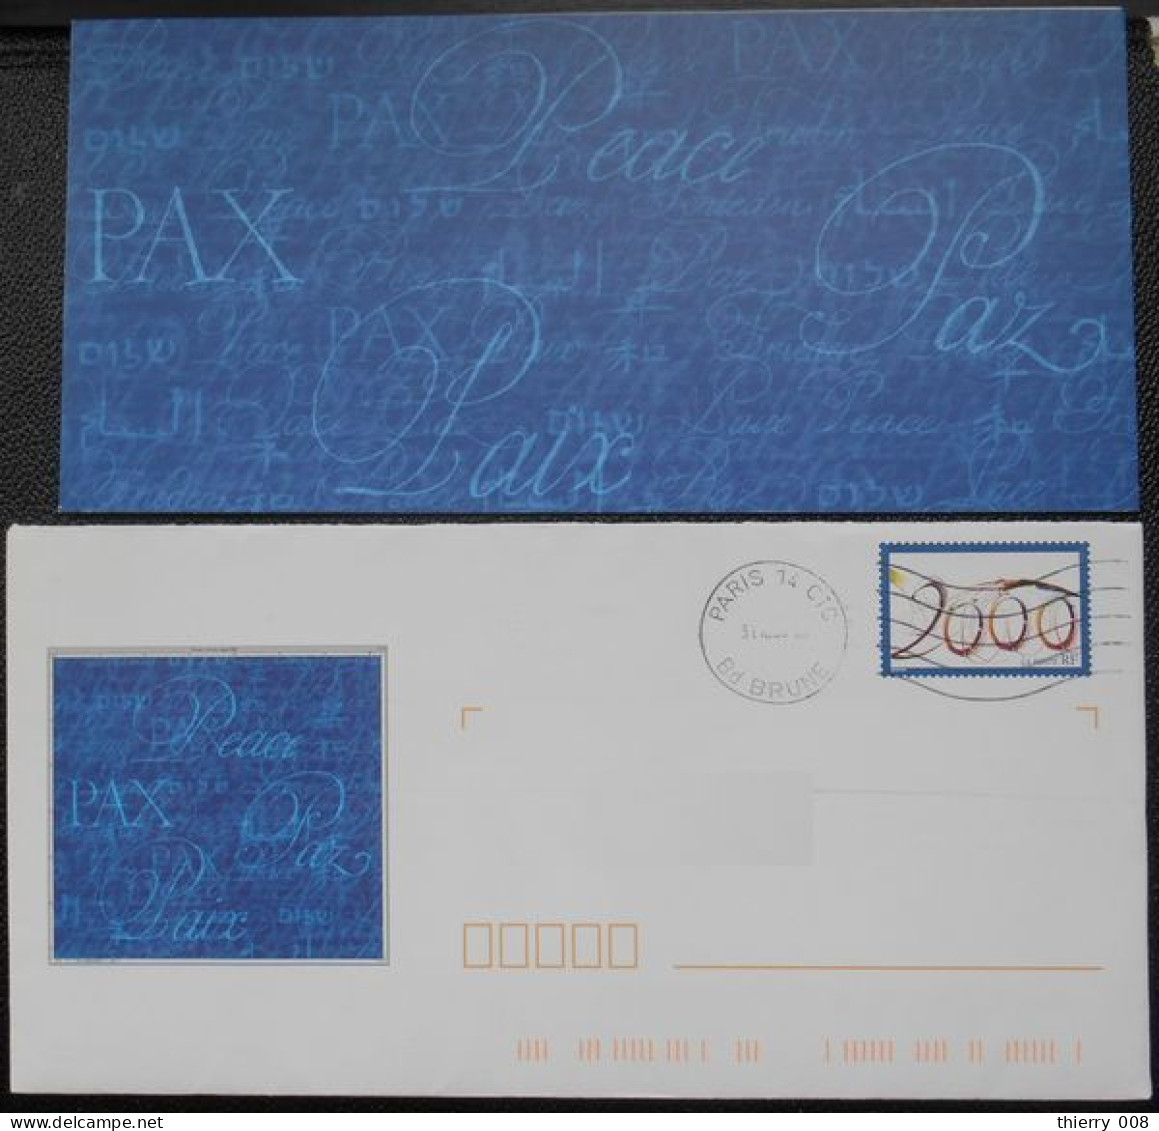 Enveloppe PAP De Service La Poste Timbre An 2000  Oblitéré  Avec Son Carton Non écrit - Brieven & Documenten